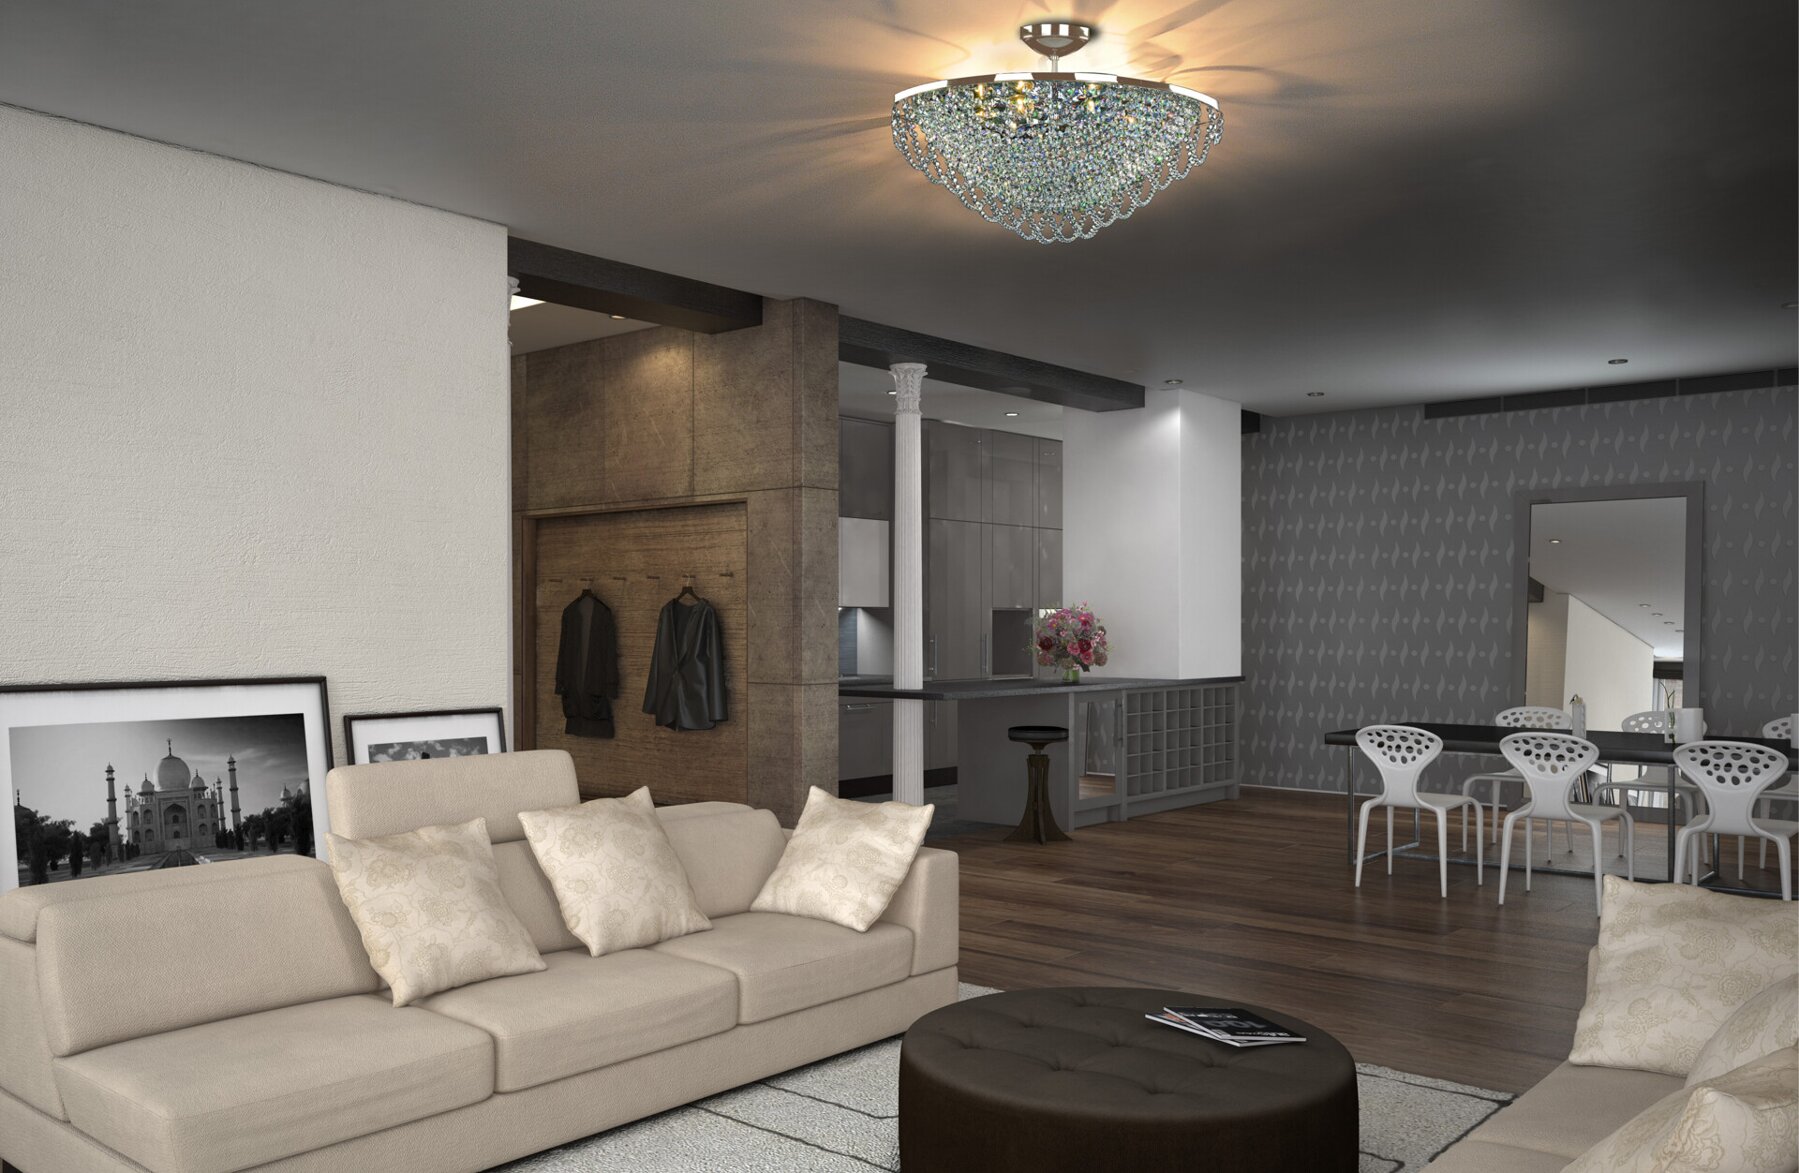 Living room Ceiling Light in modern style TX355000106